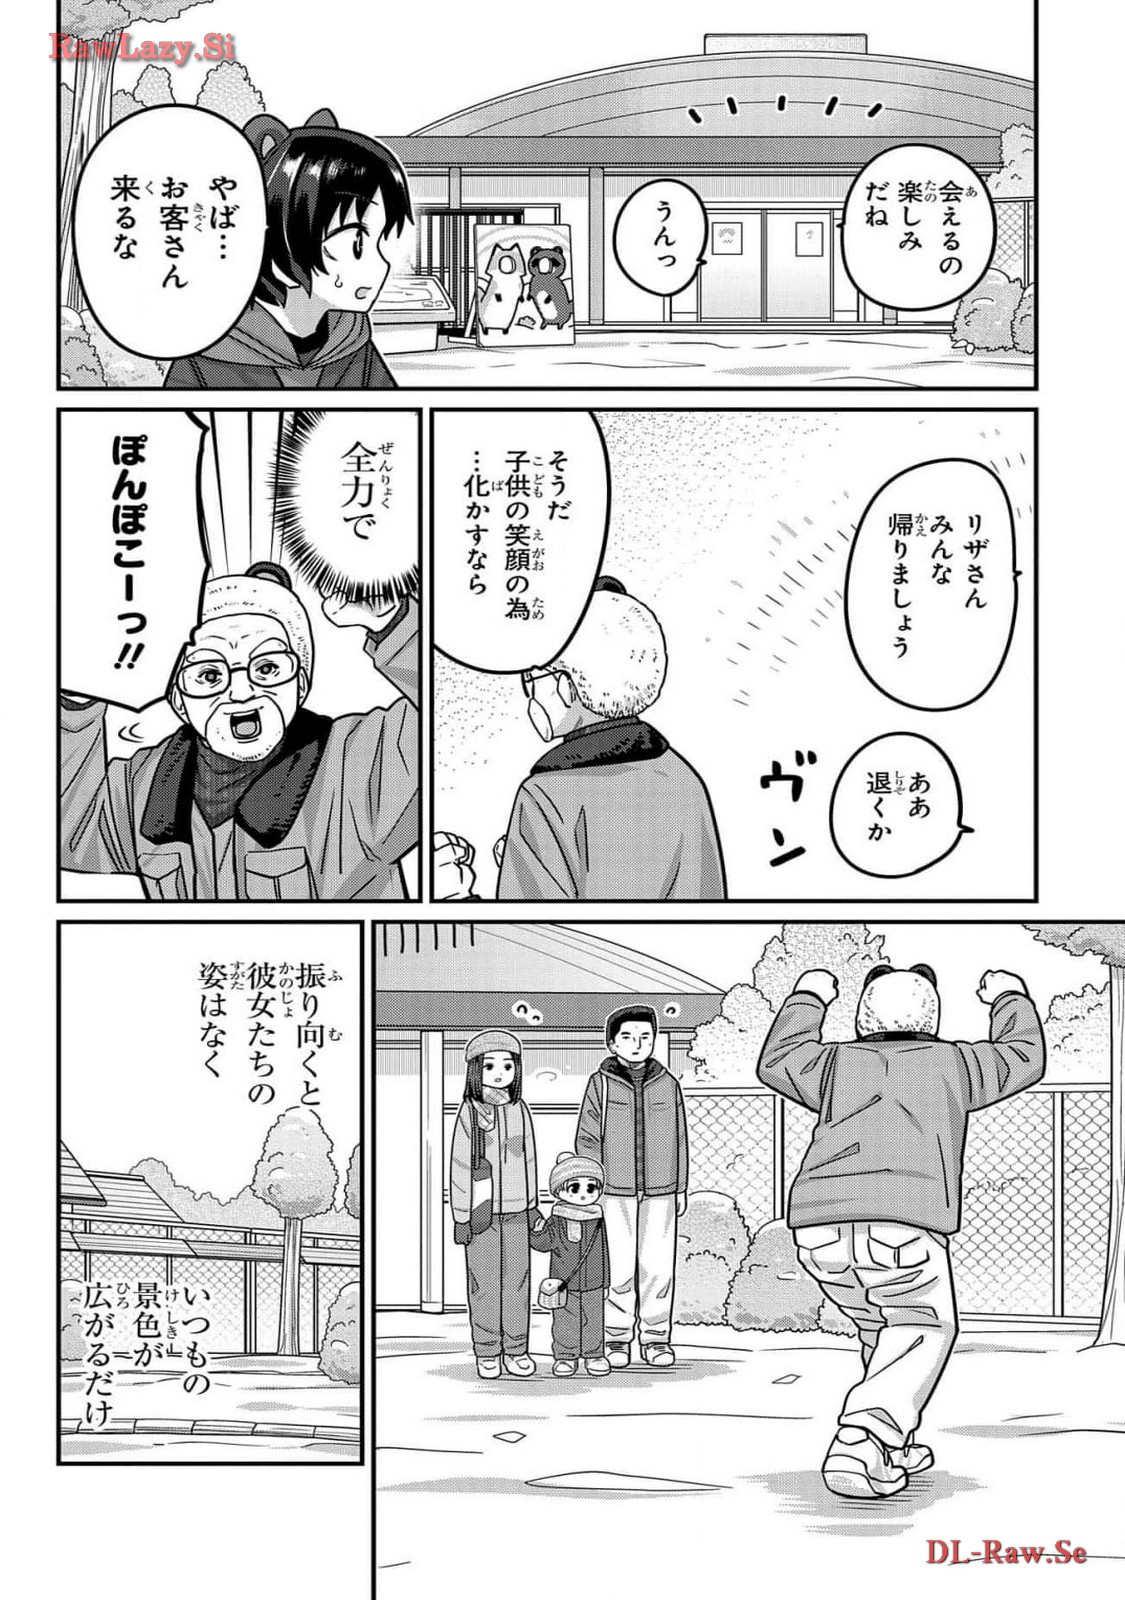 Kawaisugi Crisis - Chapter 102 - Page 14